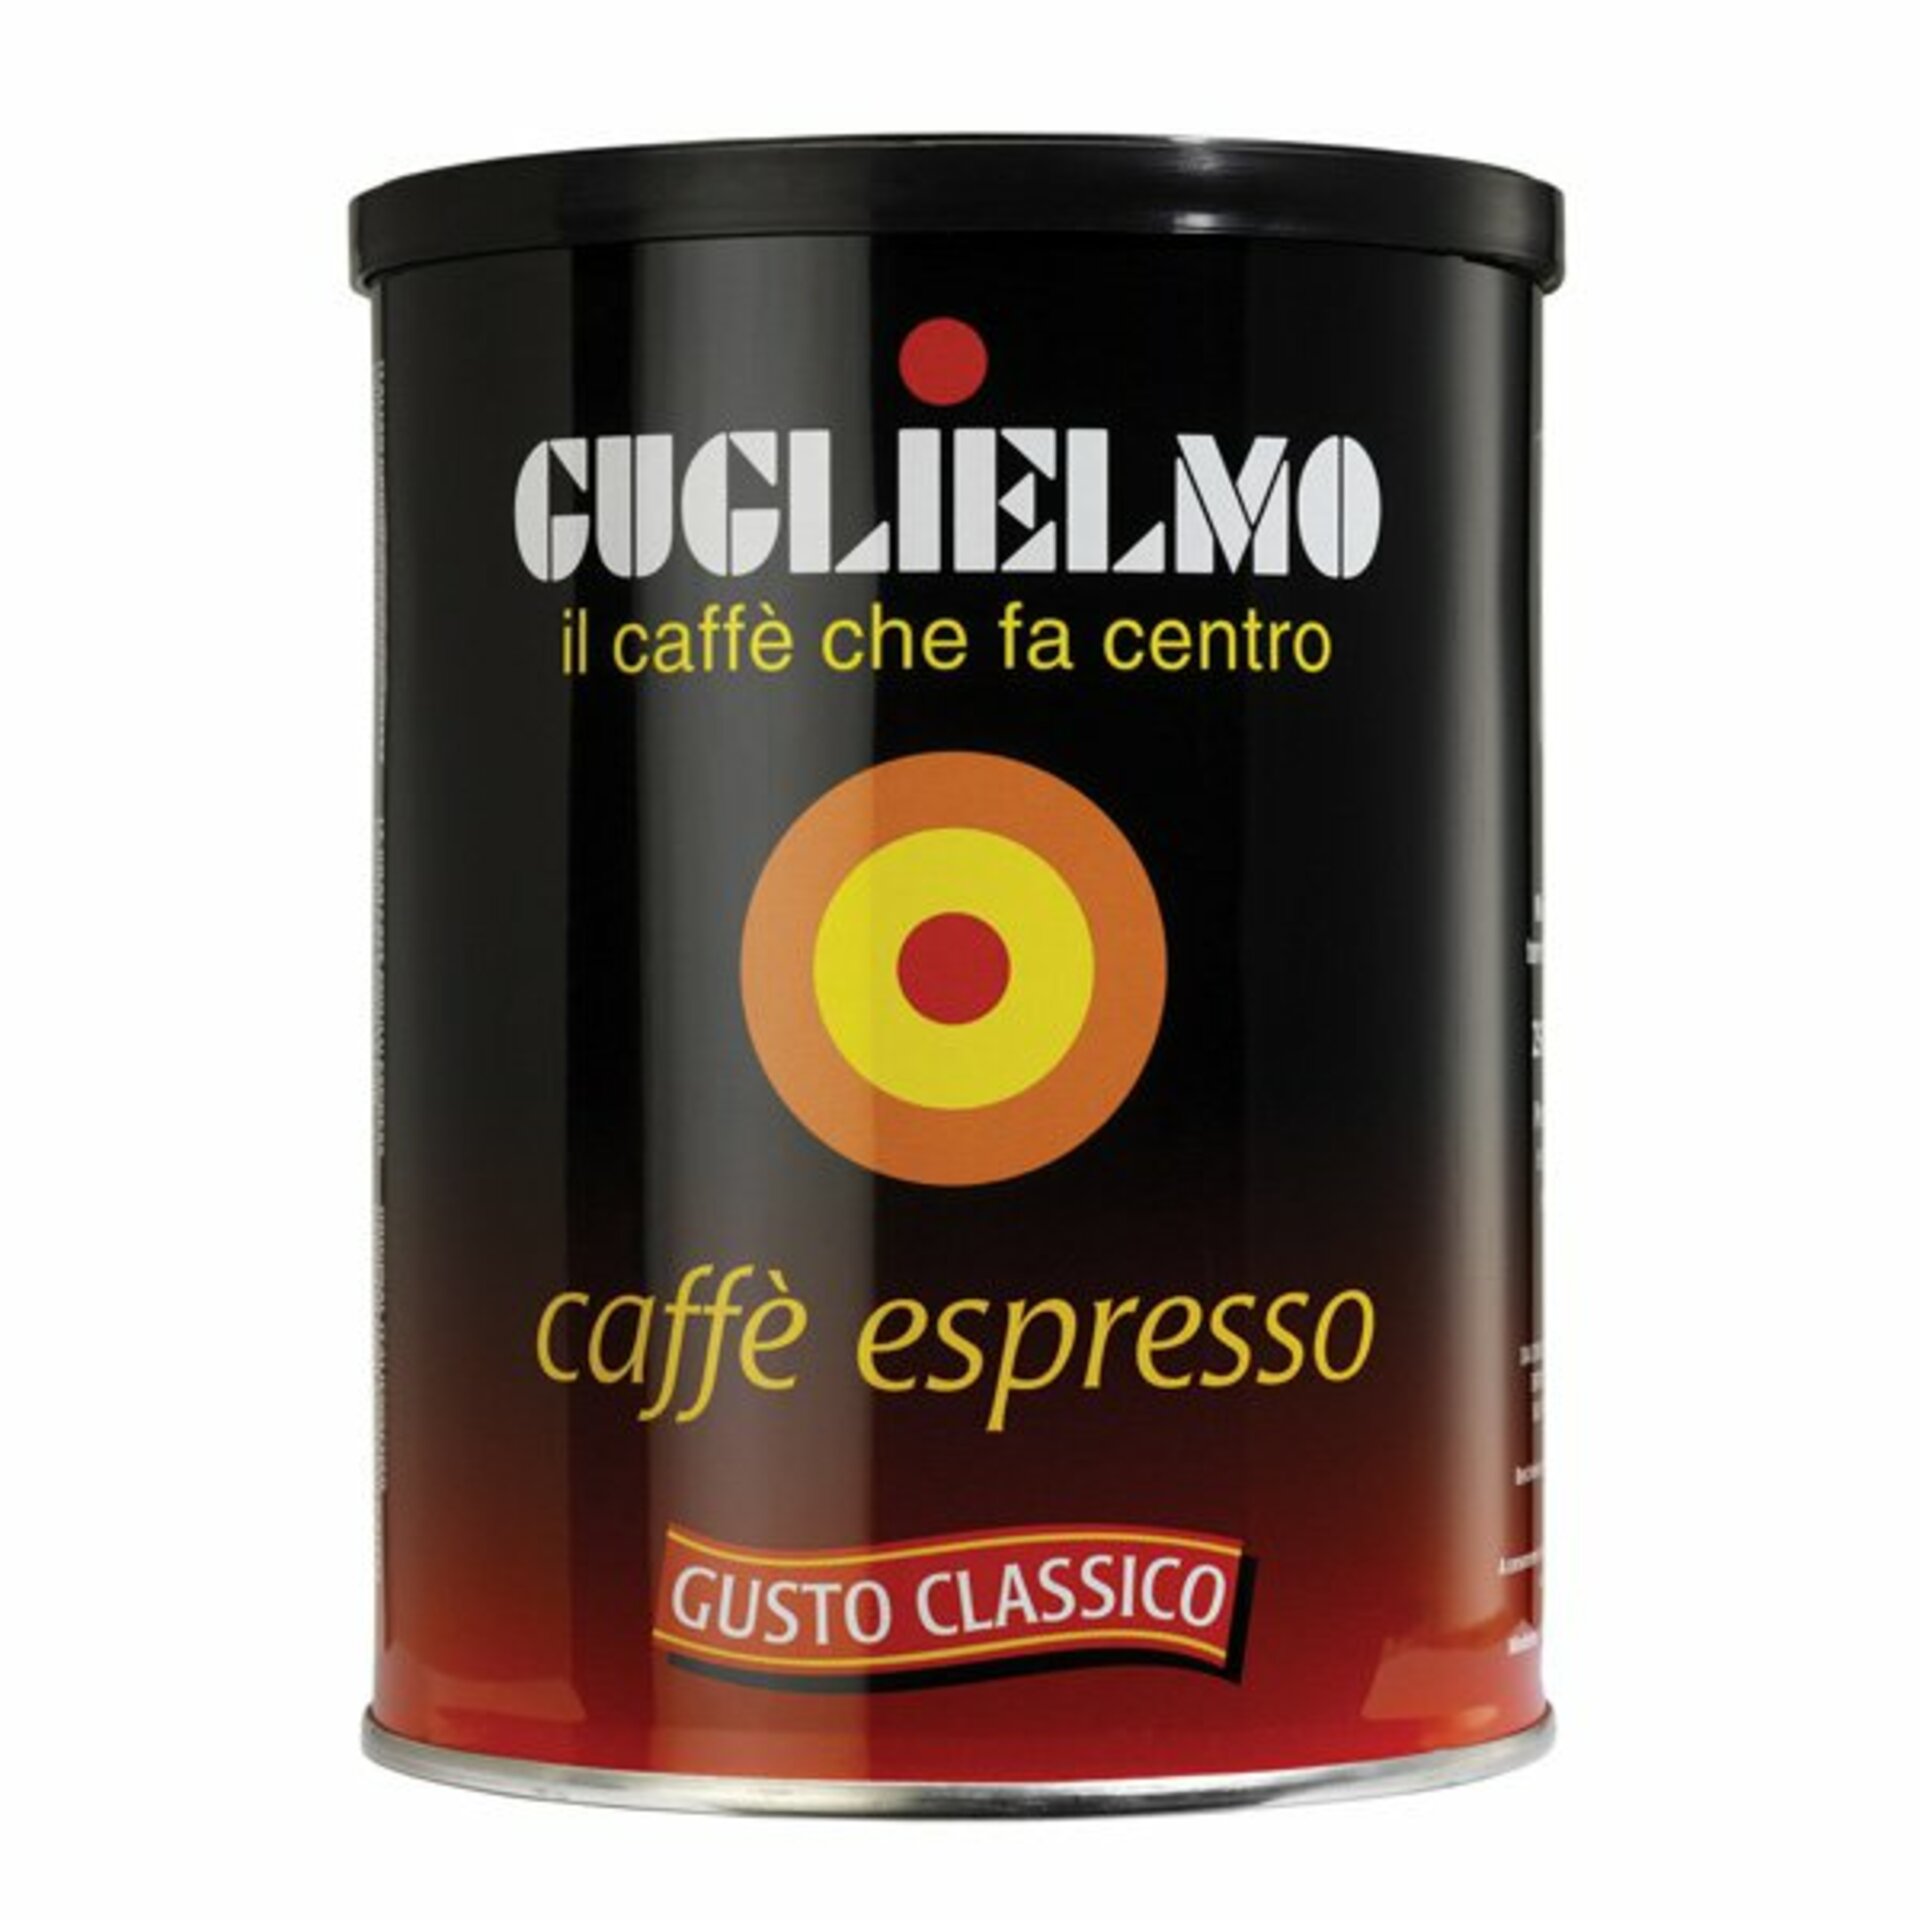 Guglielmo Caffé espresso 125 g - expirace